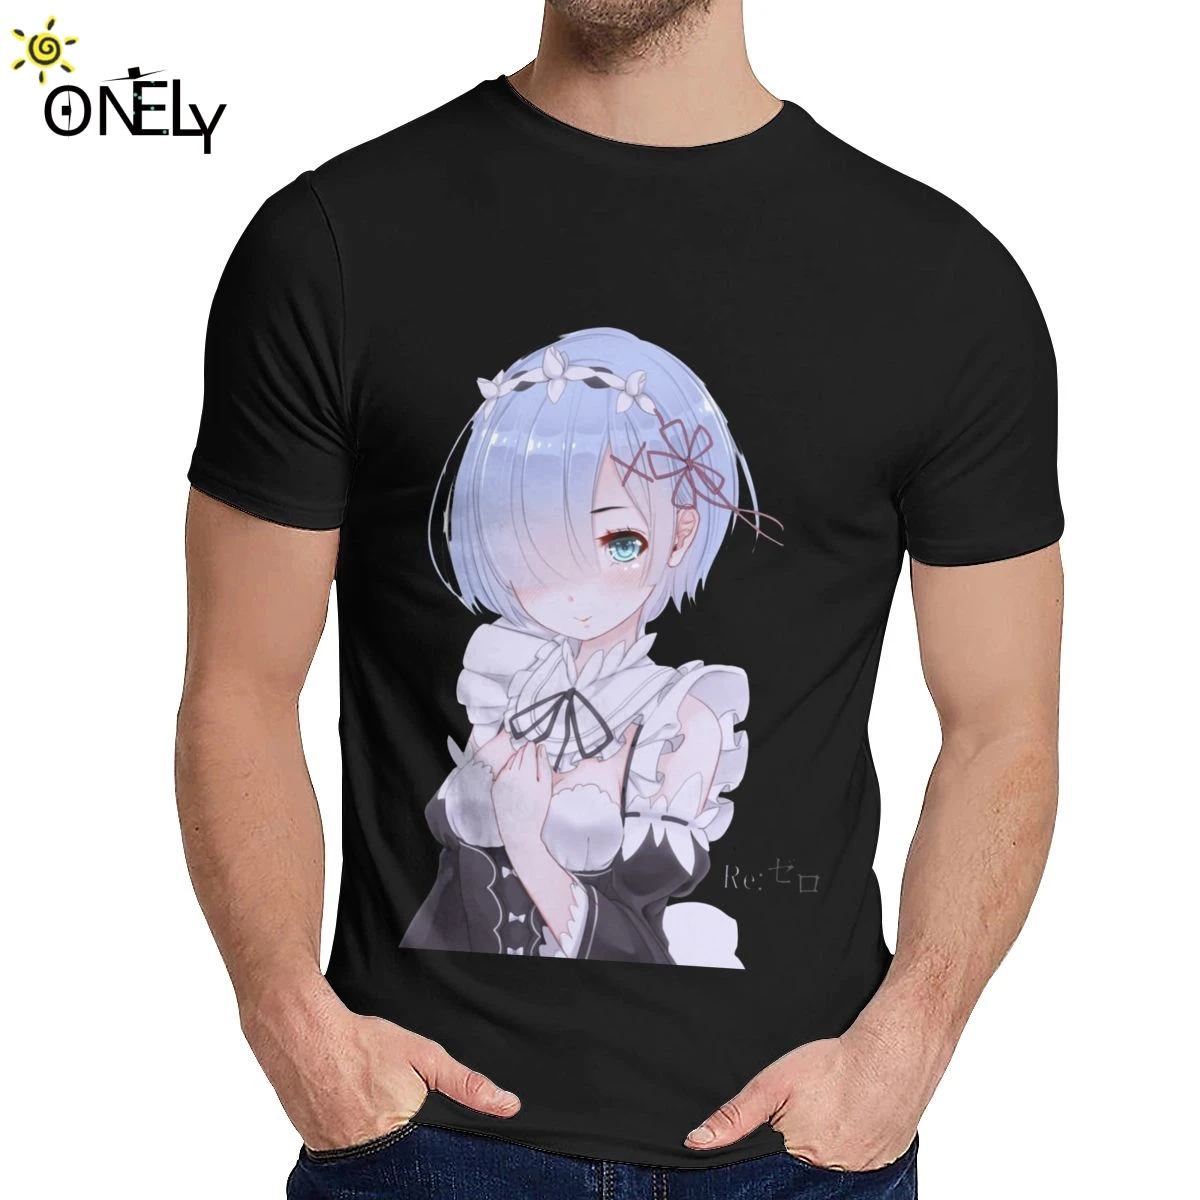 

Streetwear Re Zero Kara Anime T shirt Unisex Hipster 100% Cotton Camiseta Fashion Crewneck